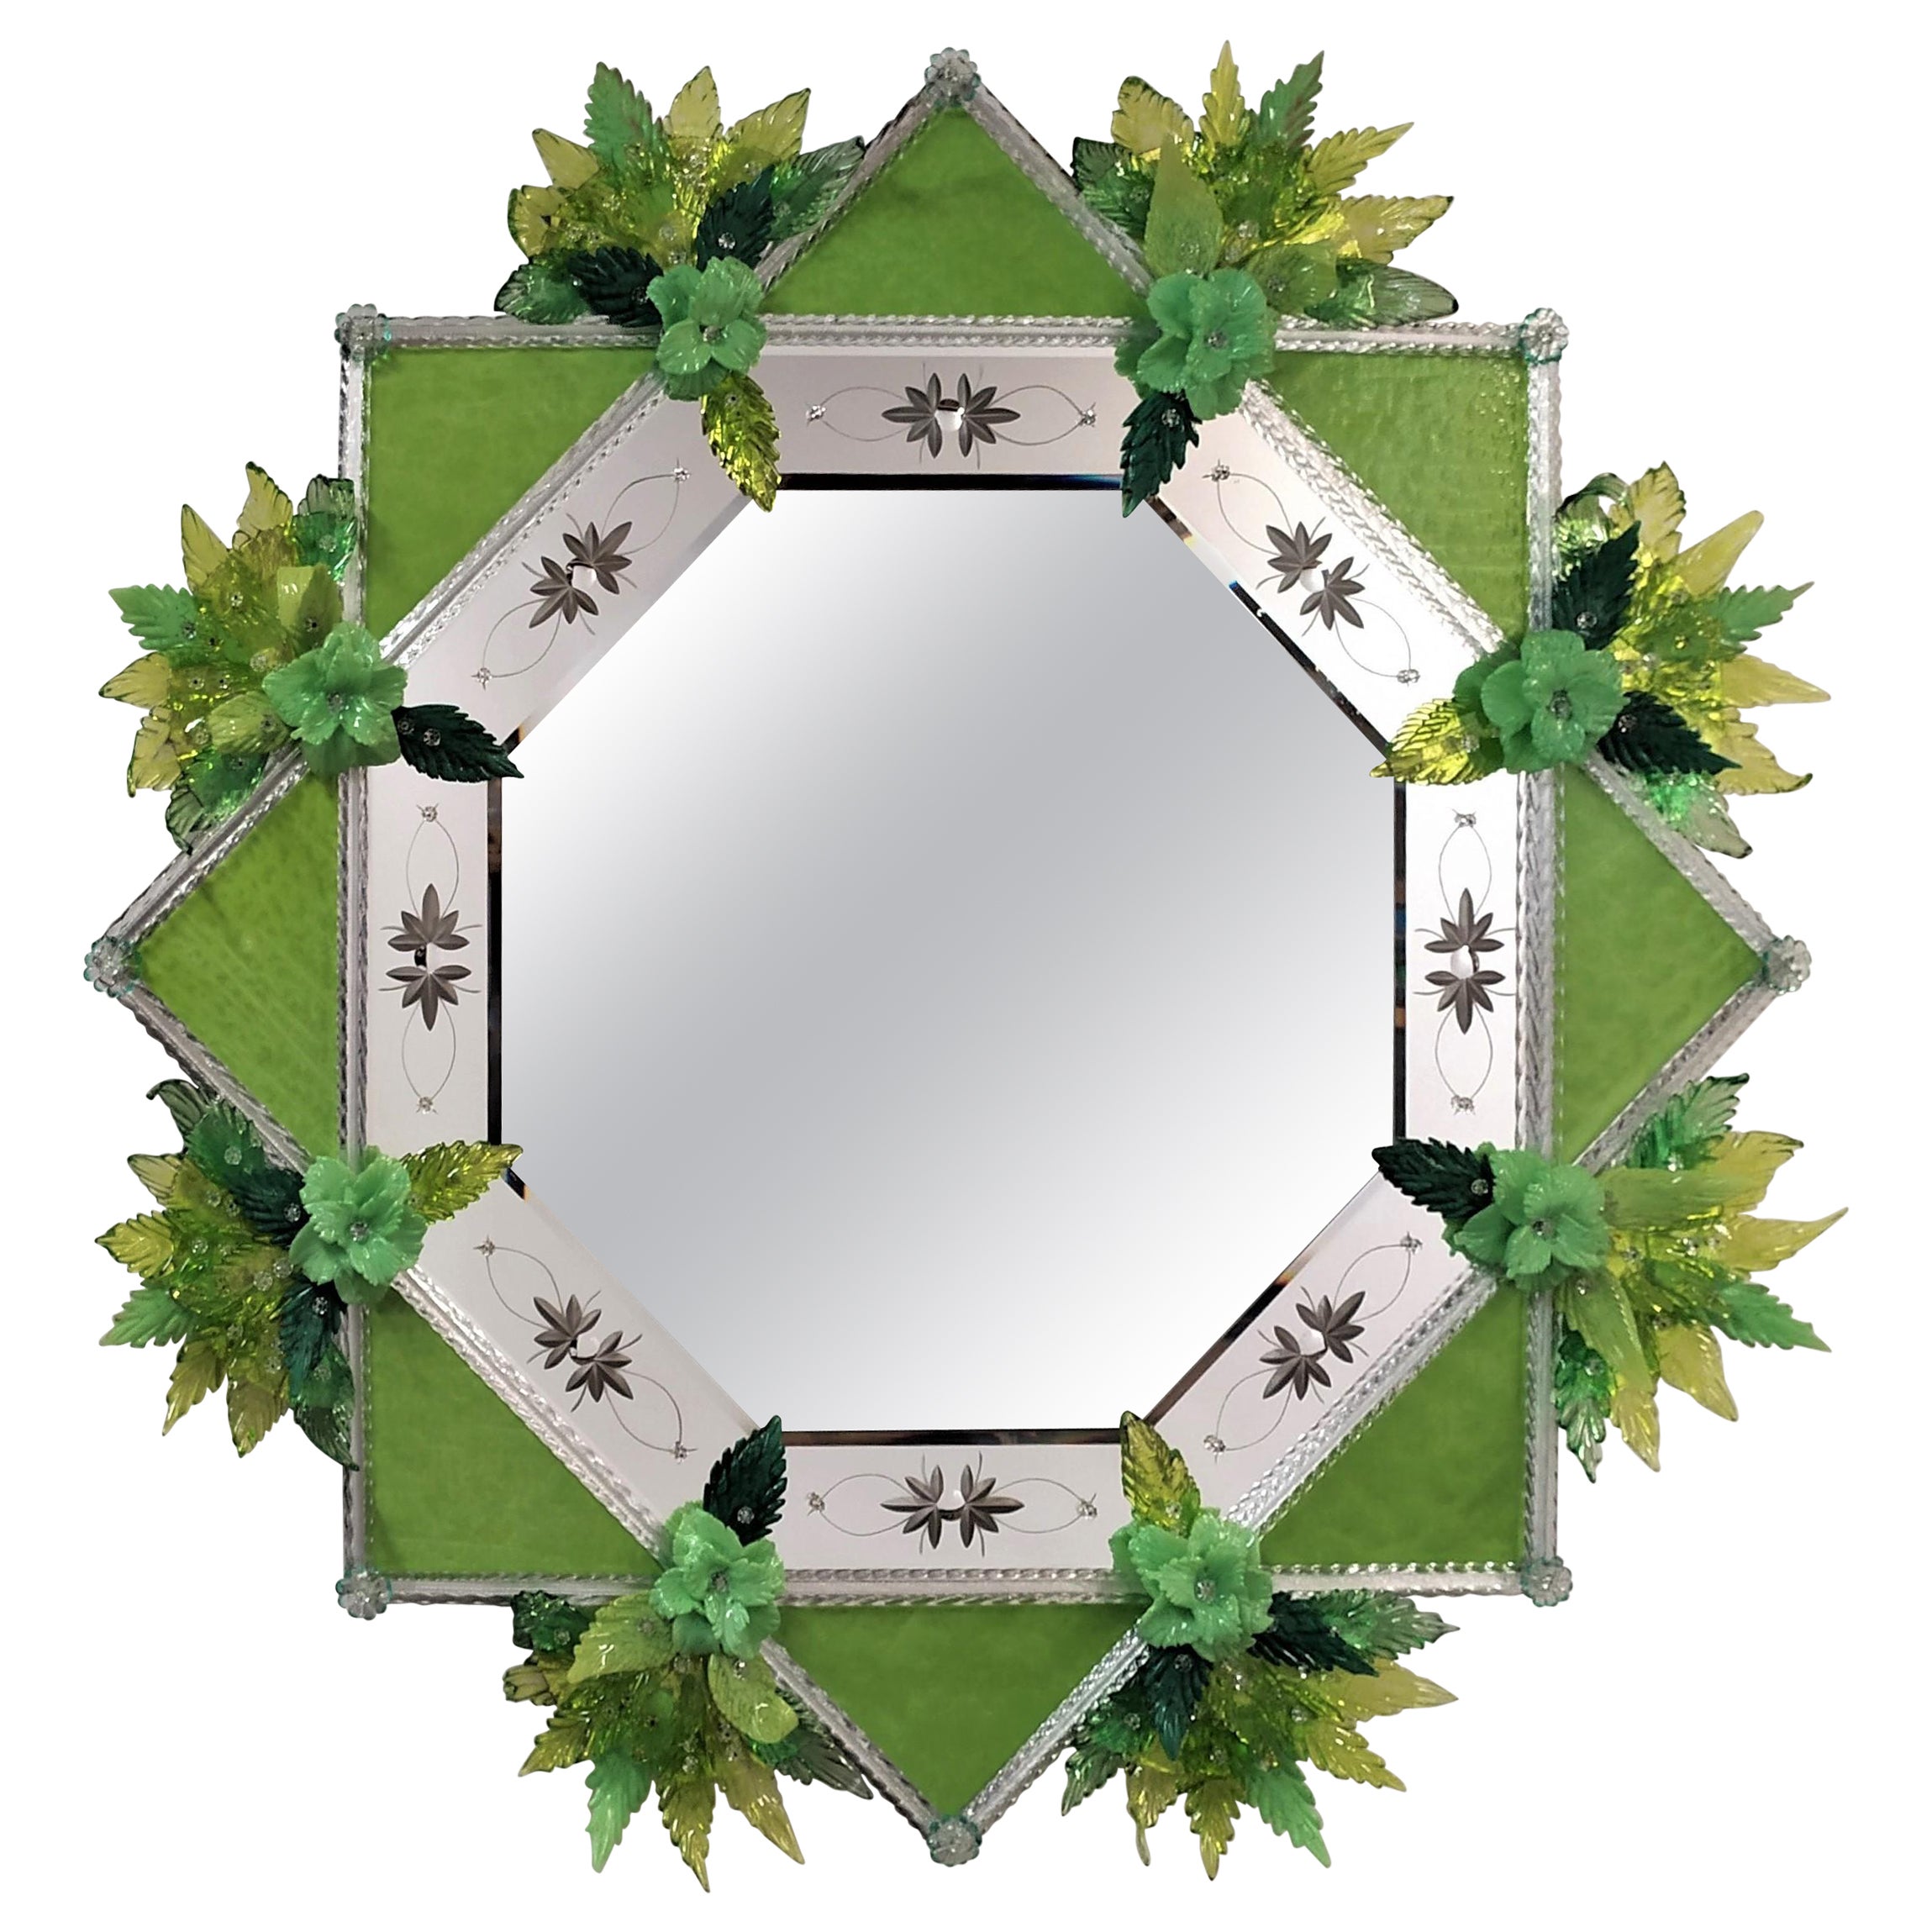 " Verde" Contemporary Murano Glass Mirror by Fratelli Tosi Murano